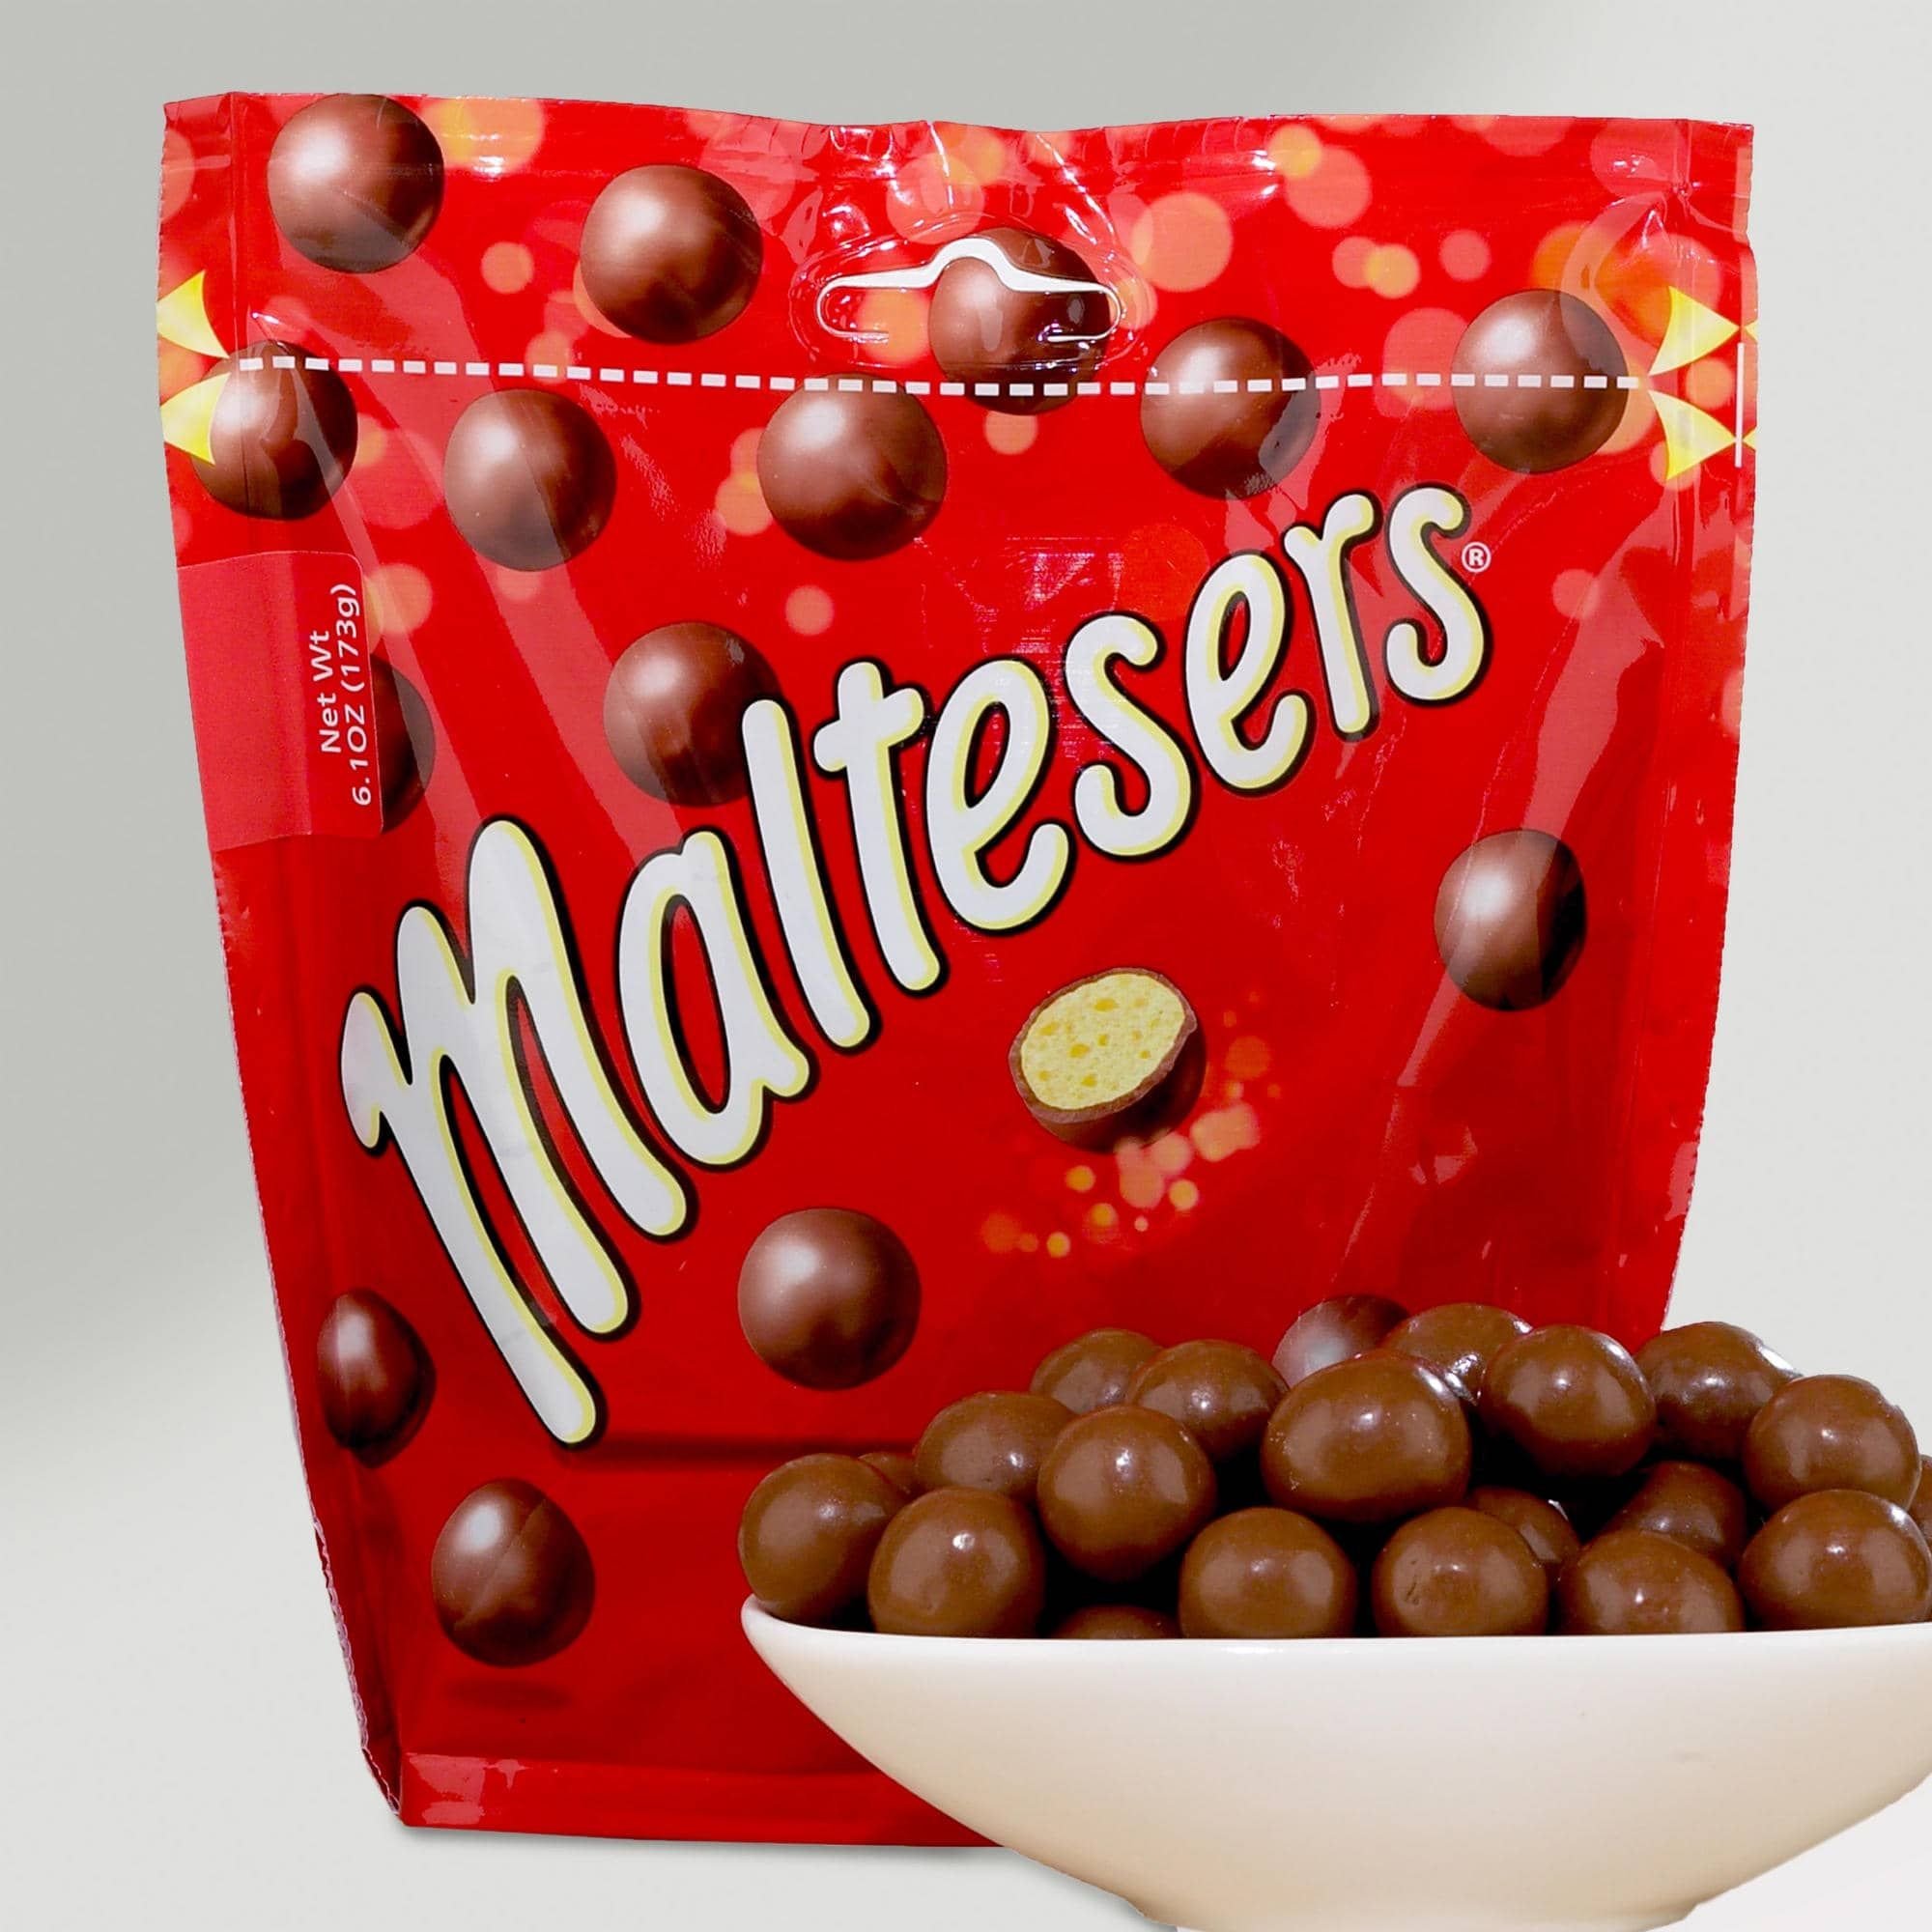 Мальтизерс. Шоколадные шарики Maltesers. Конфеты Maltesers шоколадные шарики. Драже Мальтизерс.